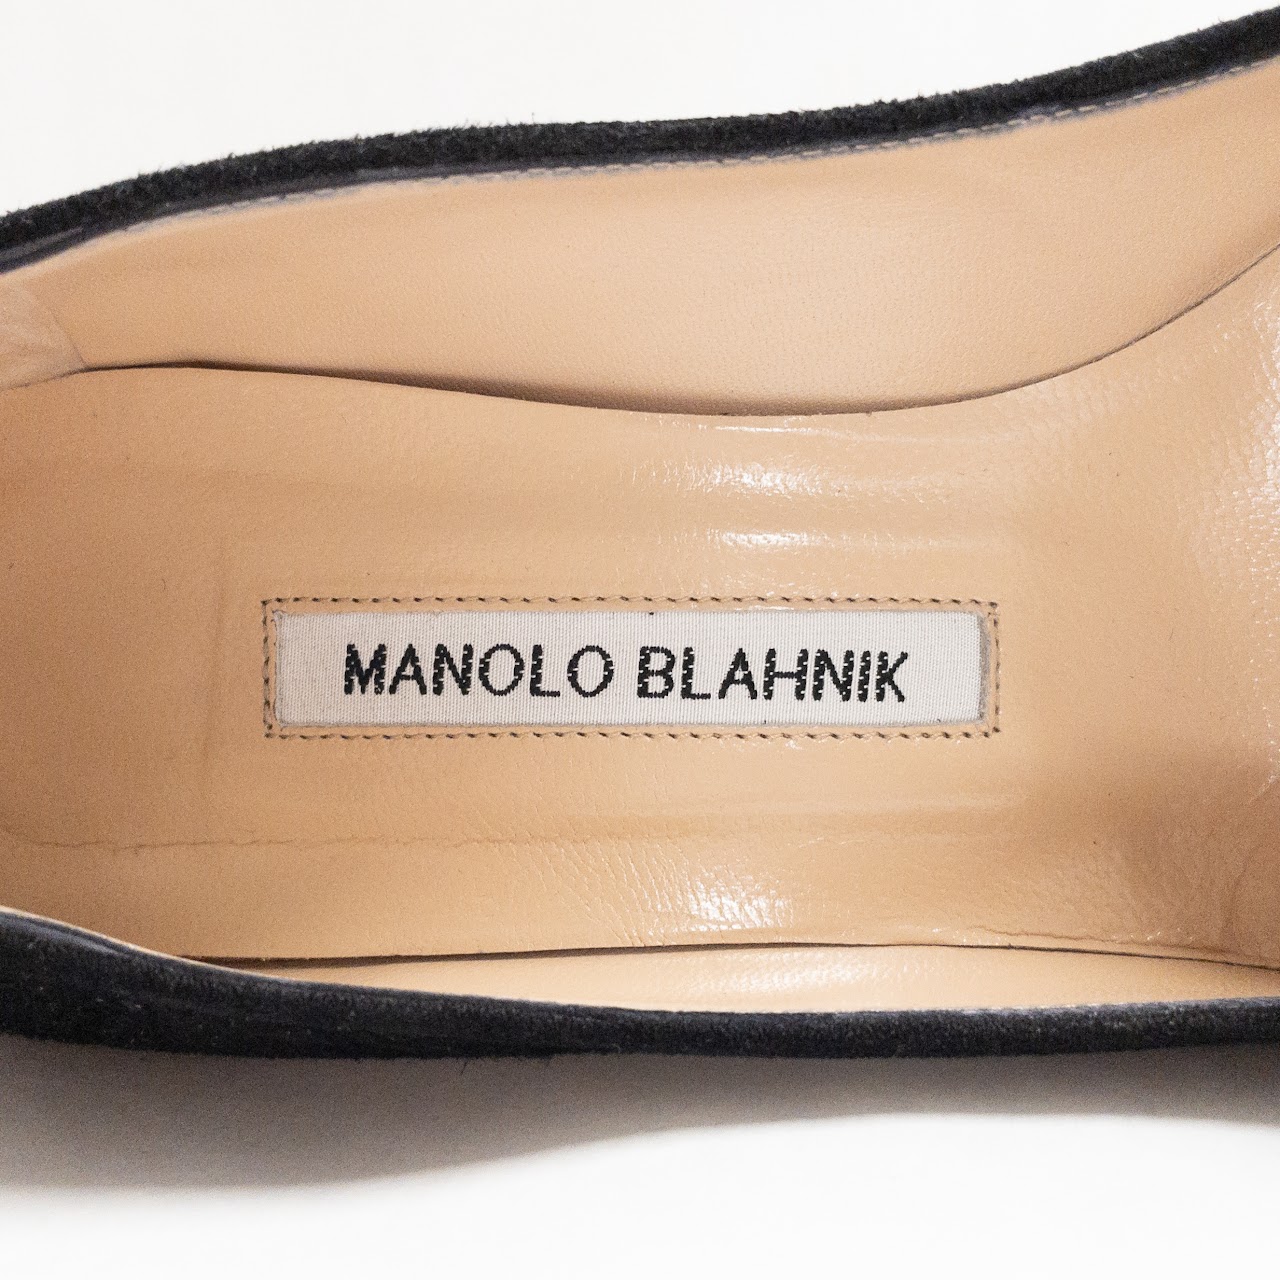 Manolo Blahnik Black Suede Pumps